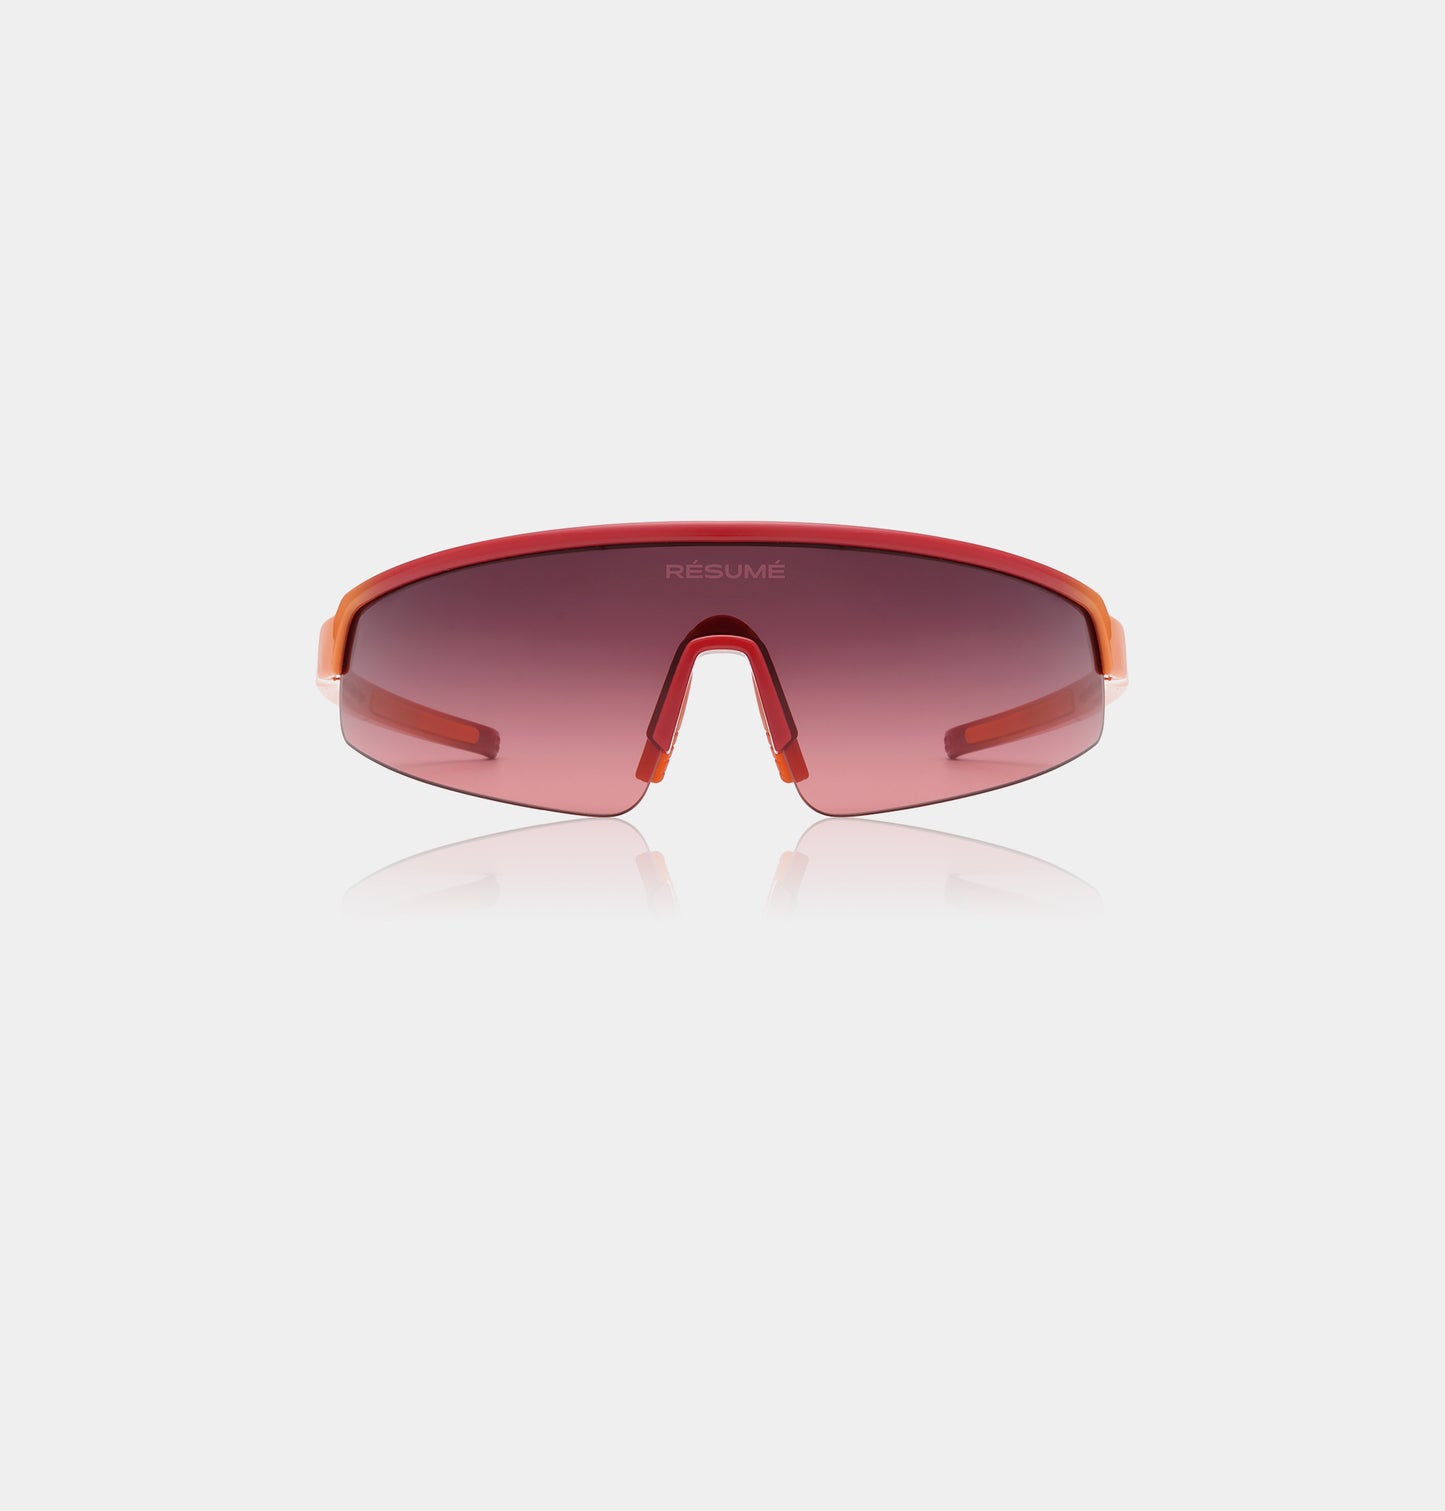 Aero Sunglasses Red/Orange Gradient